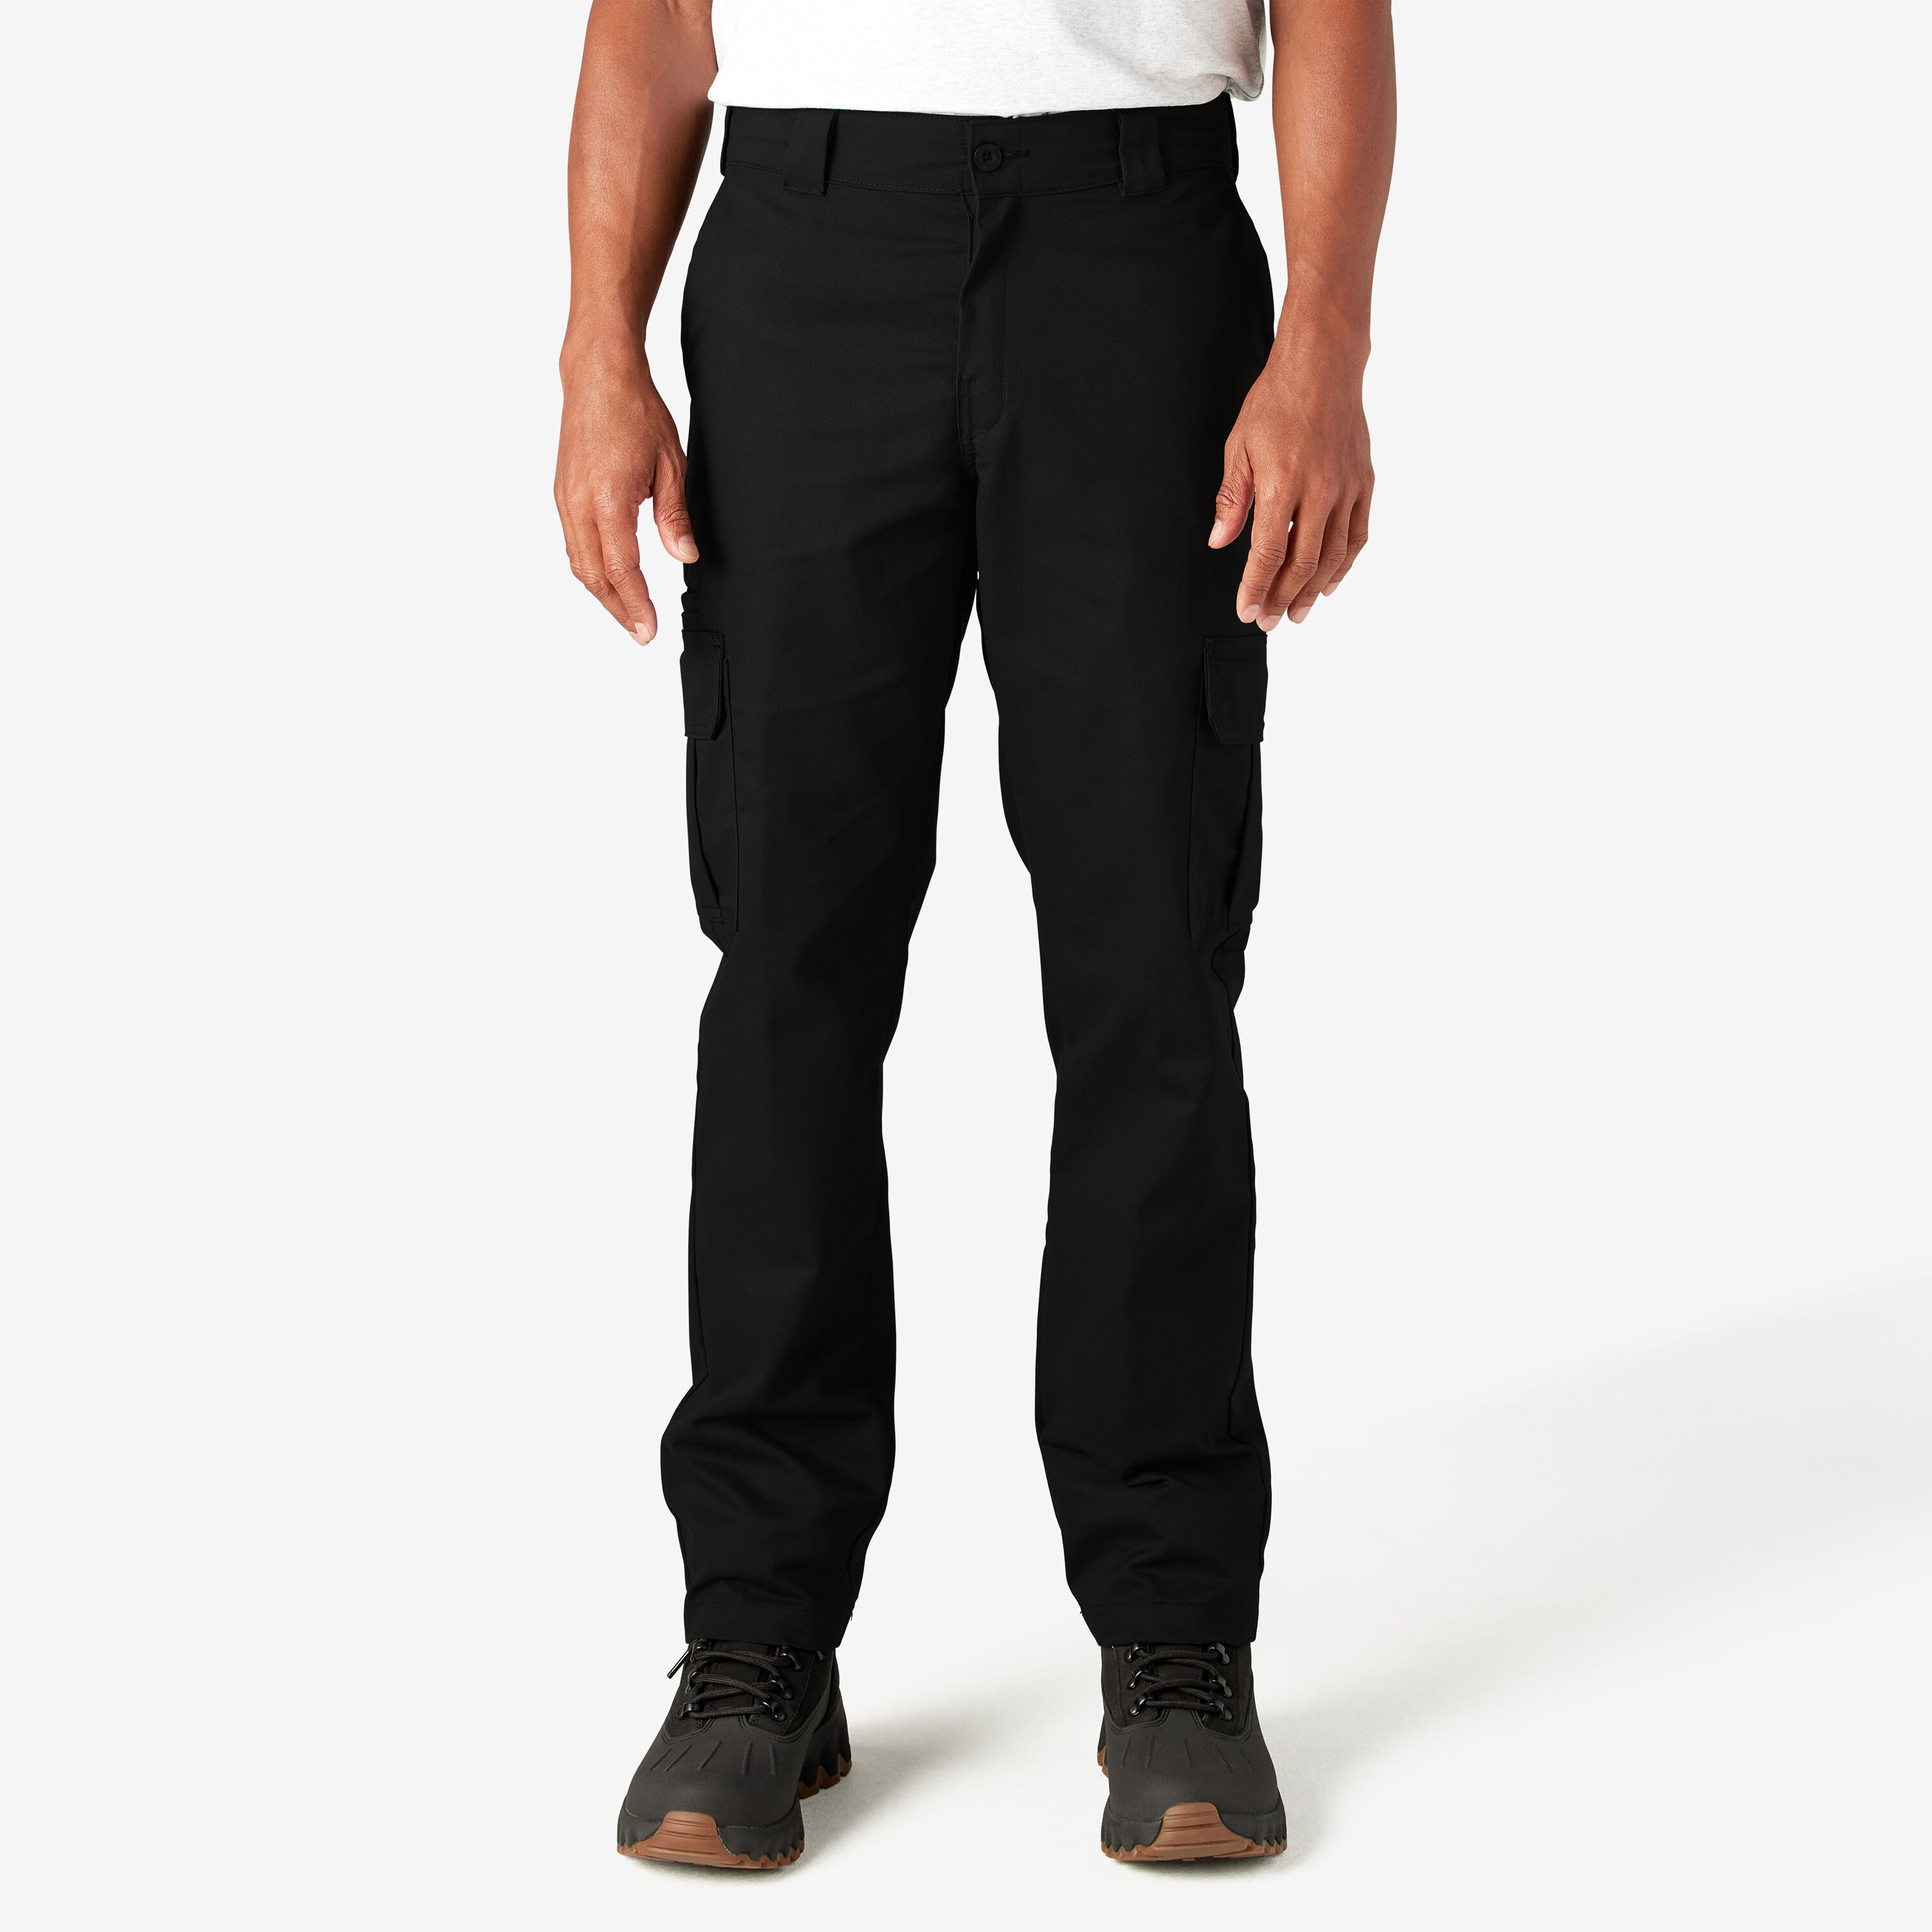 Dickies #8027 NEW Men's Black Flex Regular Fit Pants 